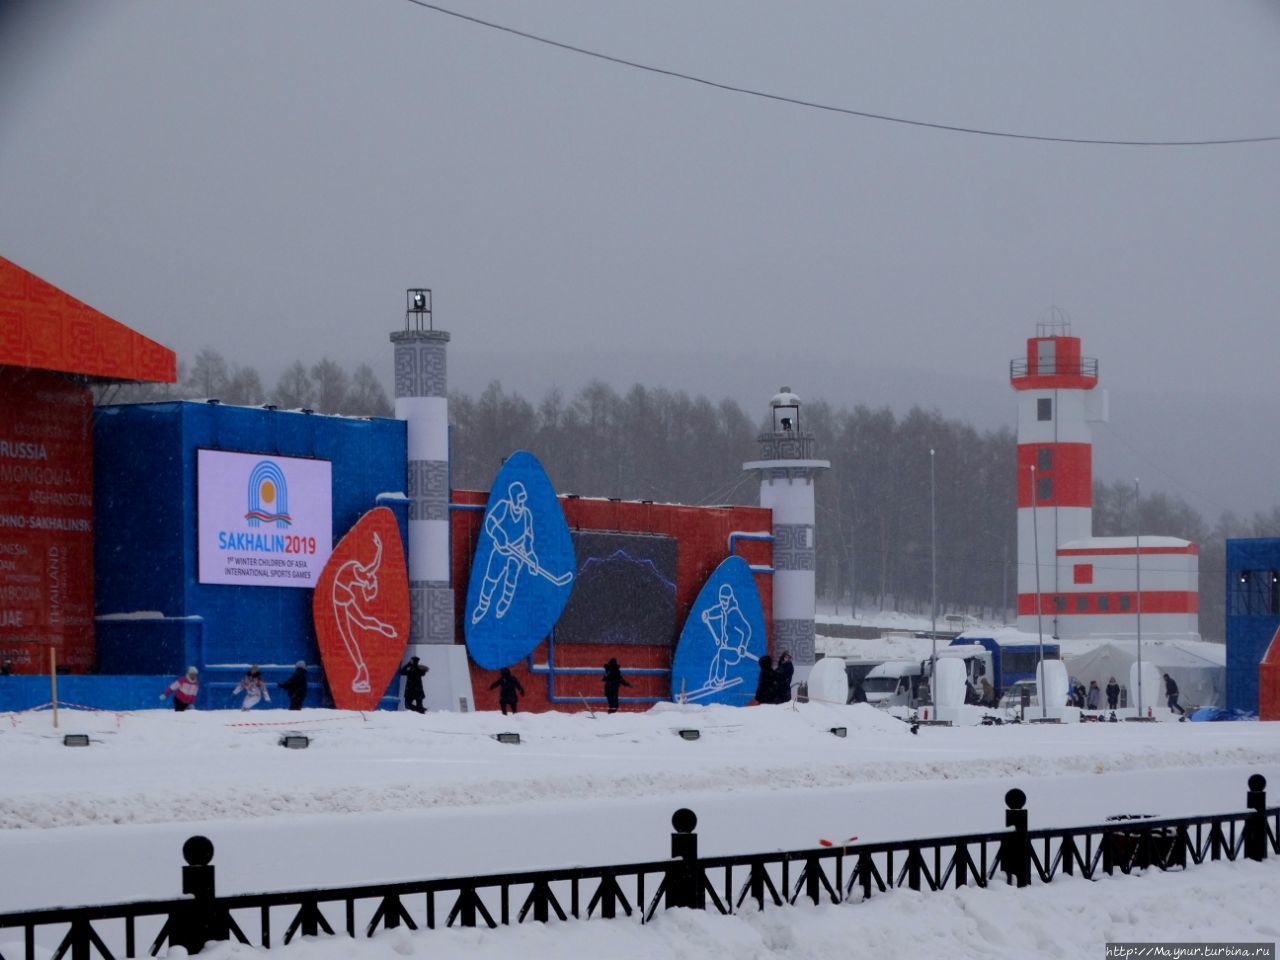 Главным украшением стадиона являются макеты сахалинских маяков. Южно-Сахалинск, Россия